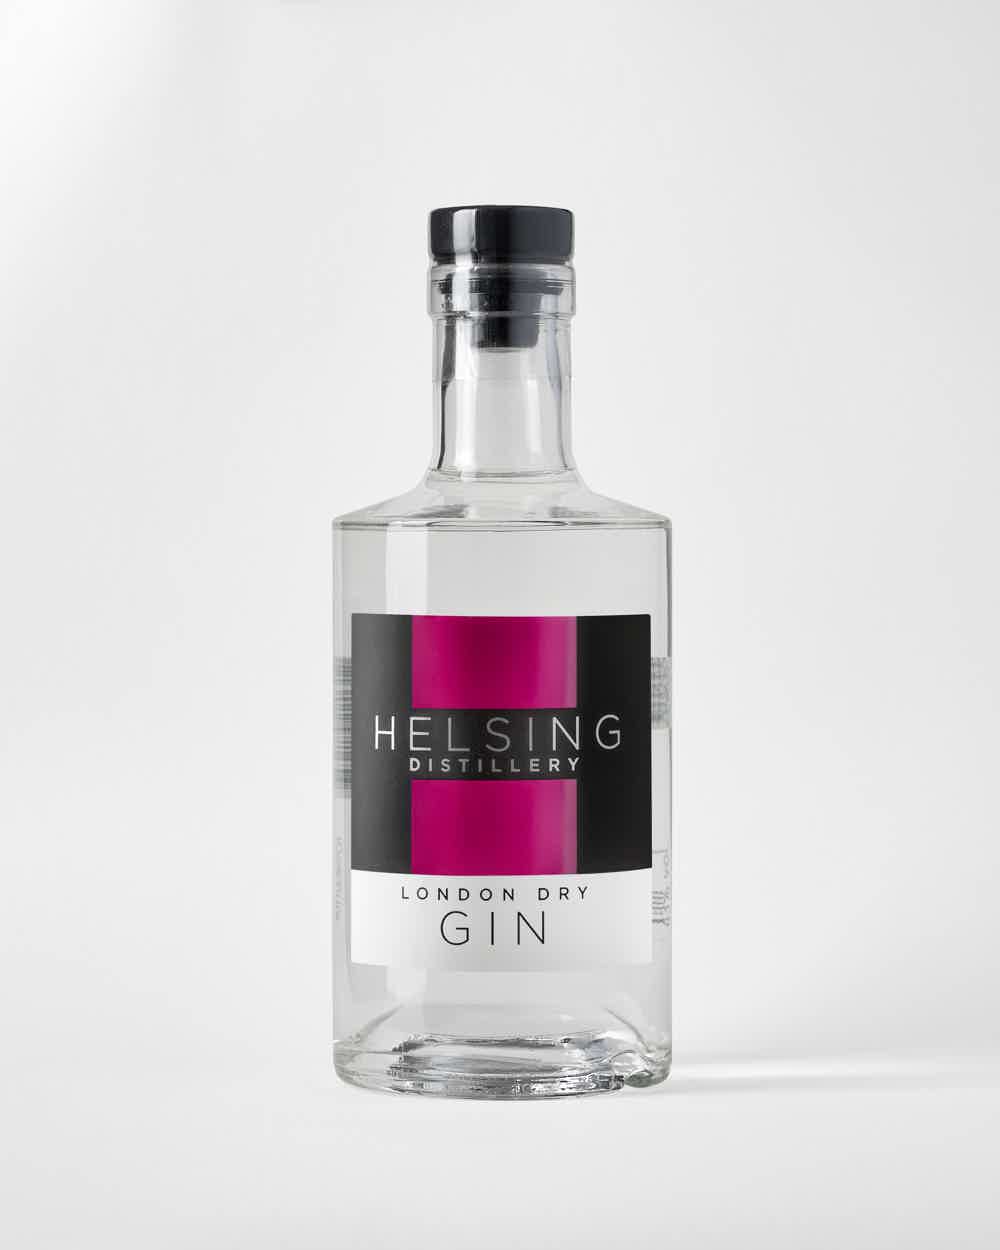 Helsing London Dry Gin 43.0% 0.5L, Spirits